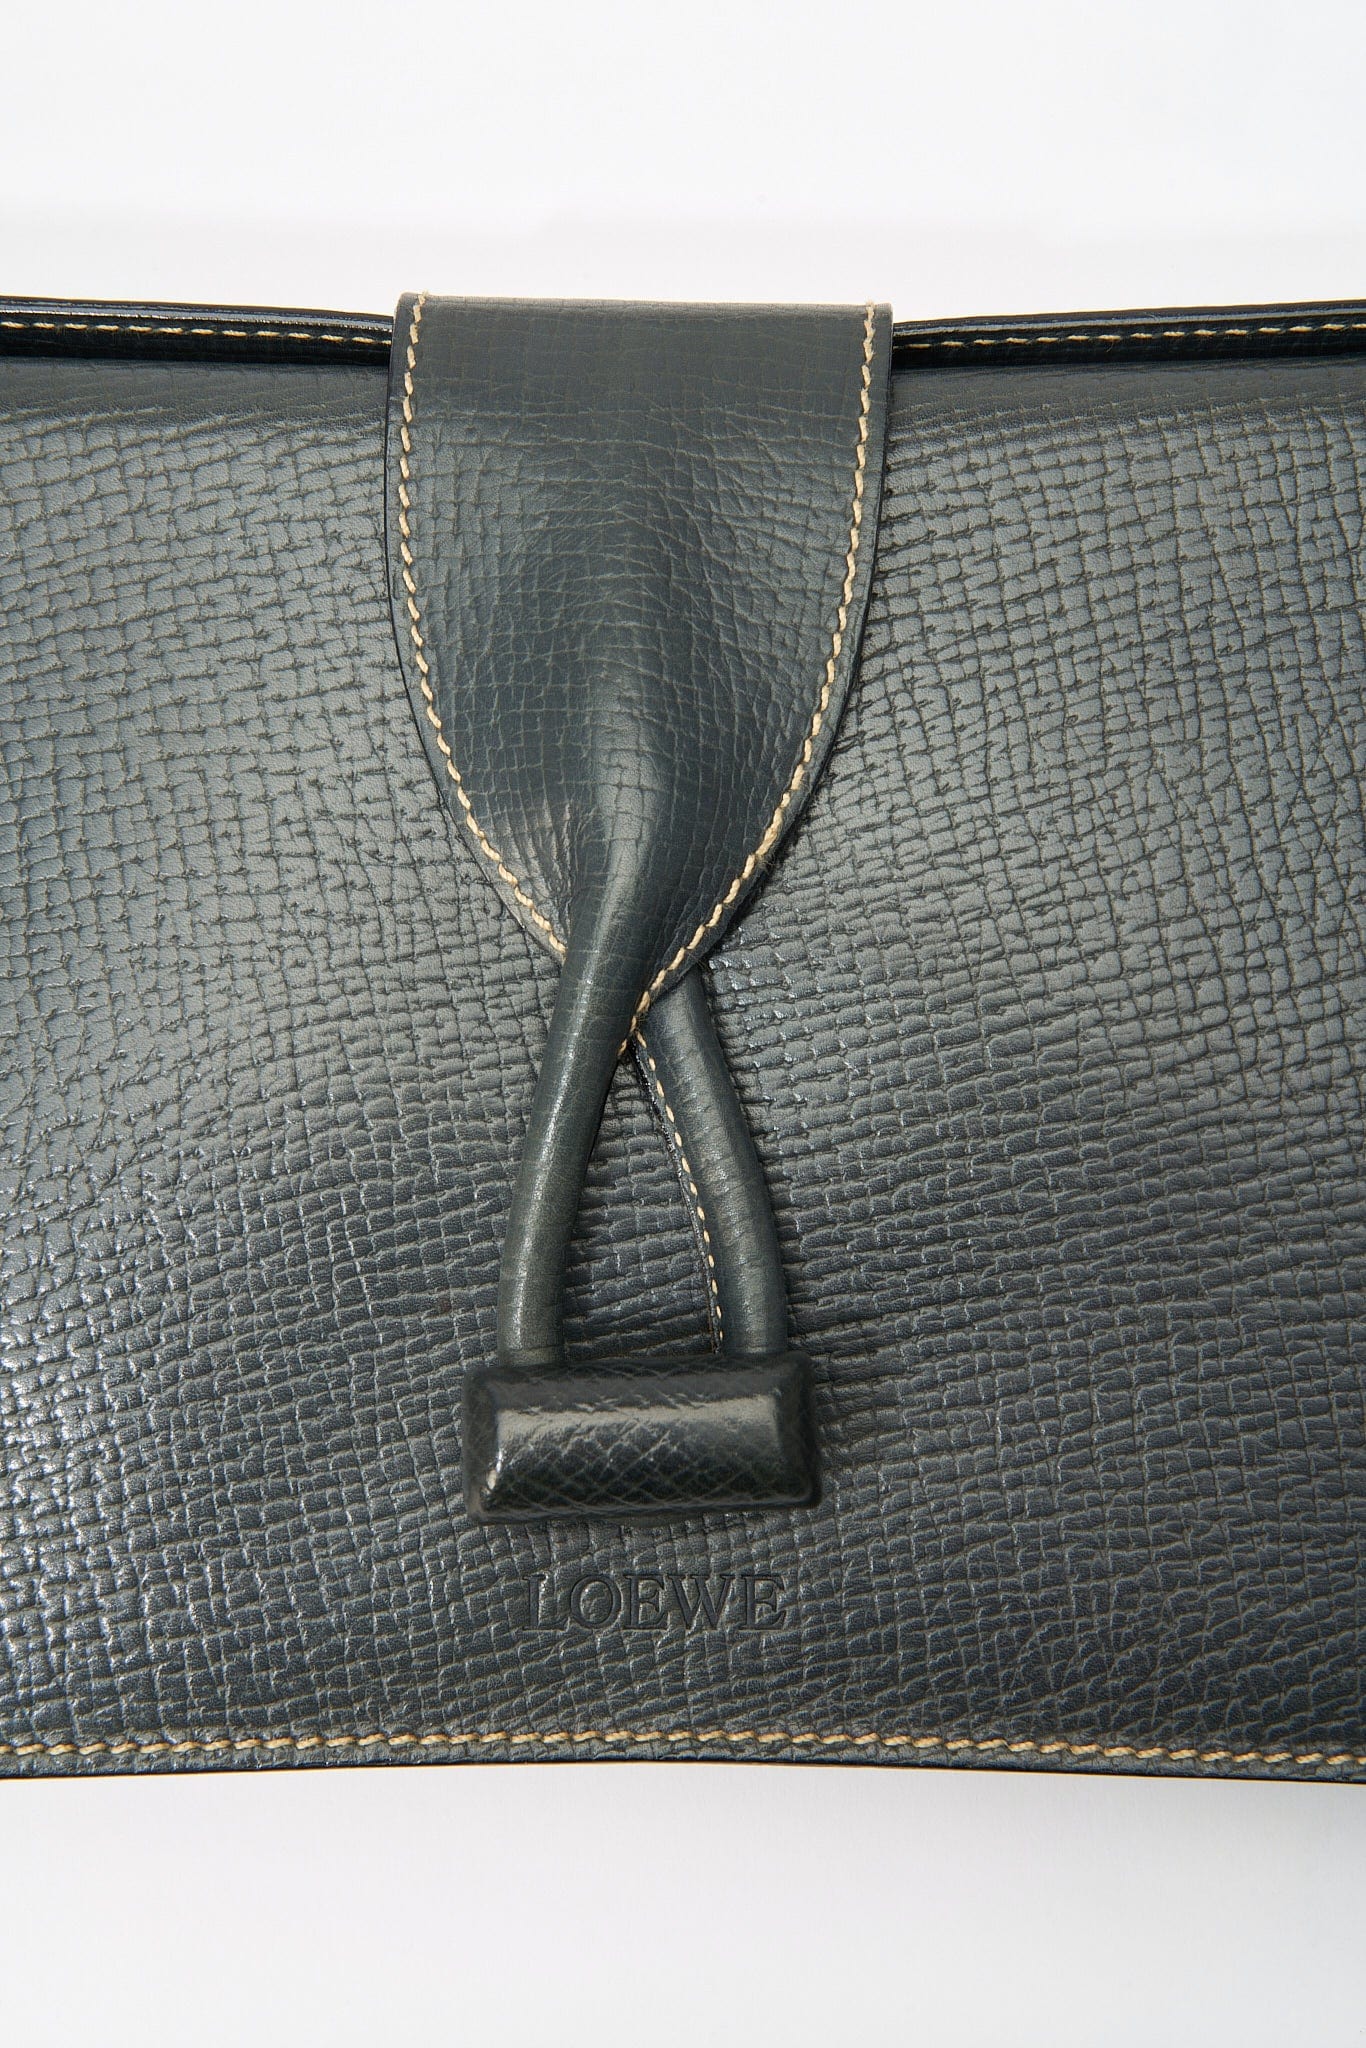 Vintage Loewe Leather Clutch Bag